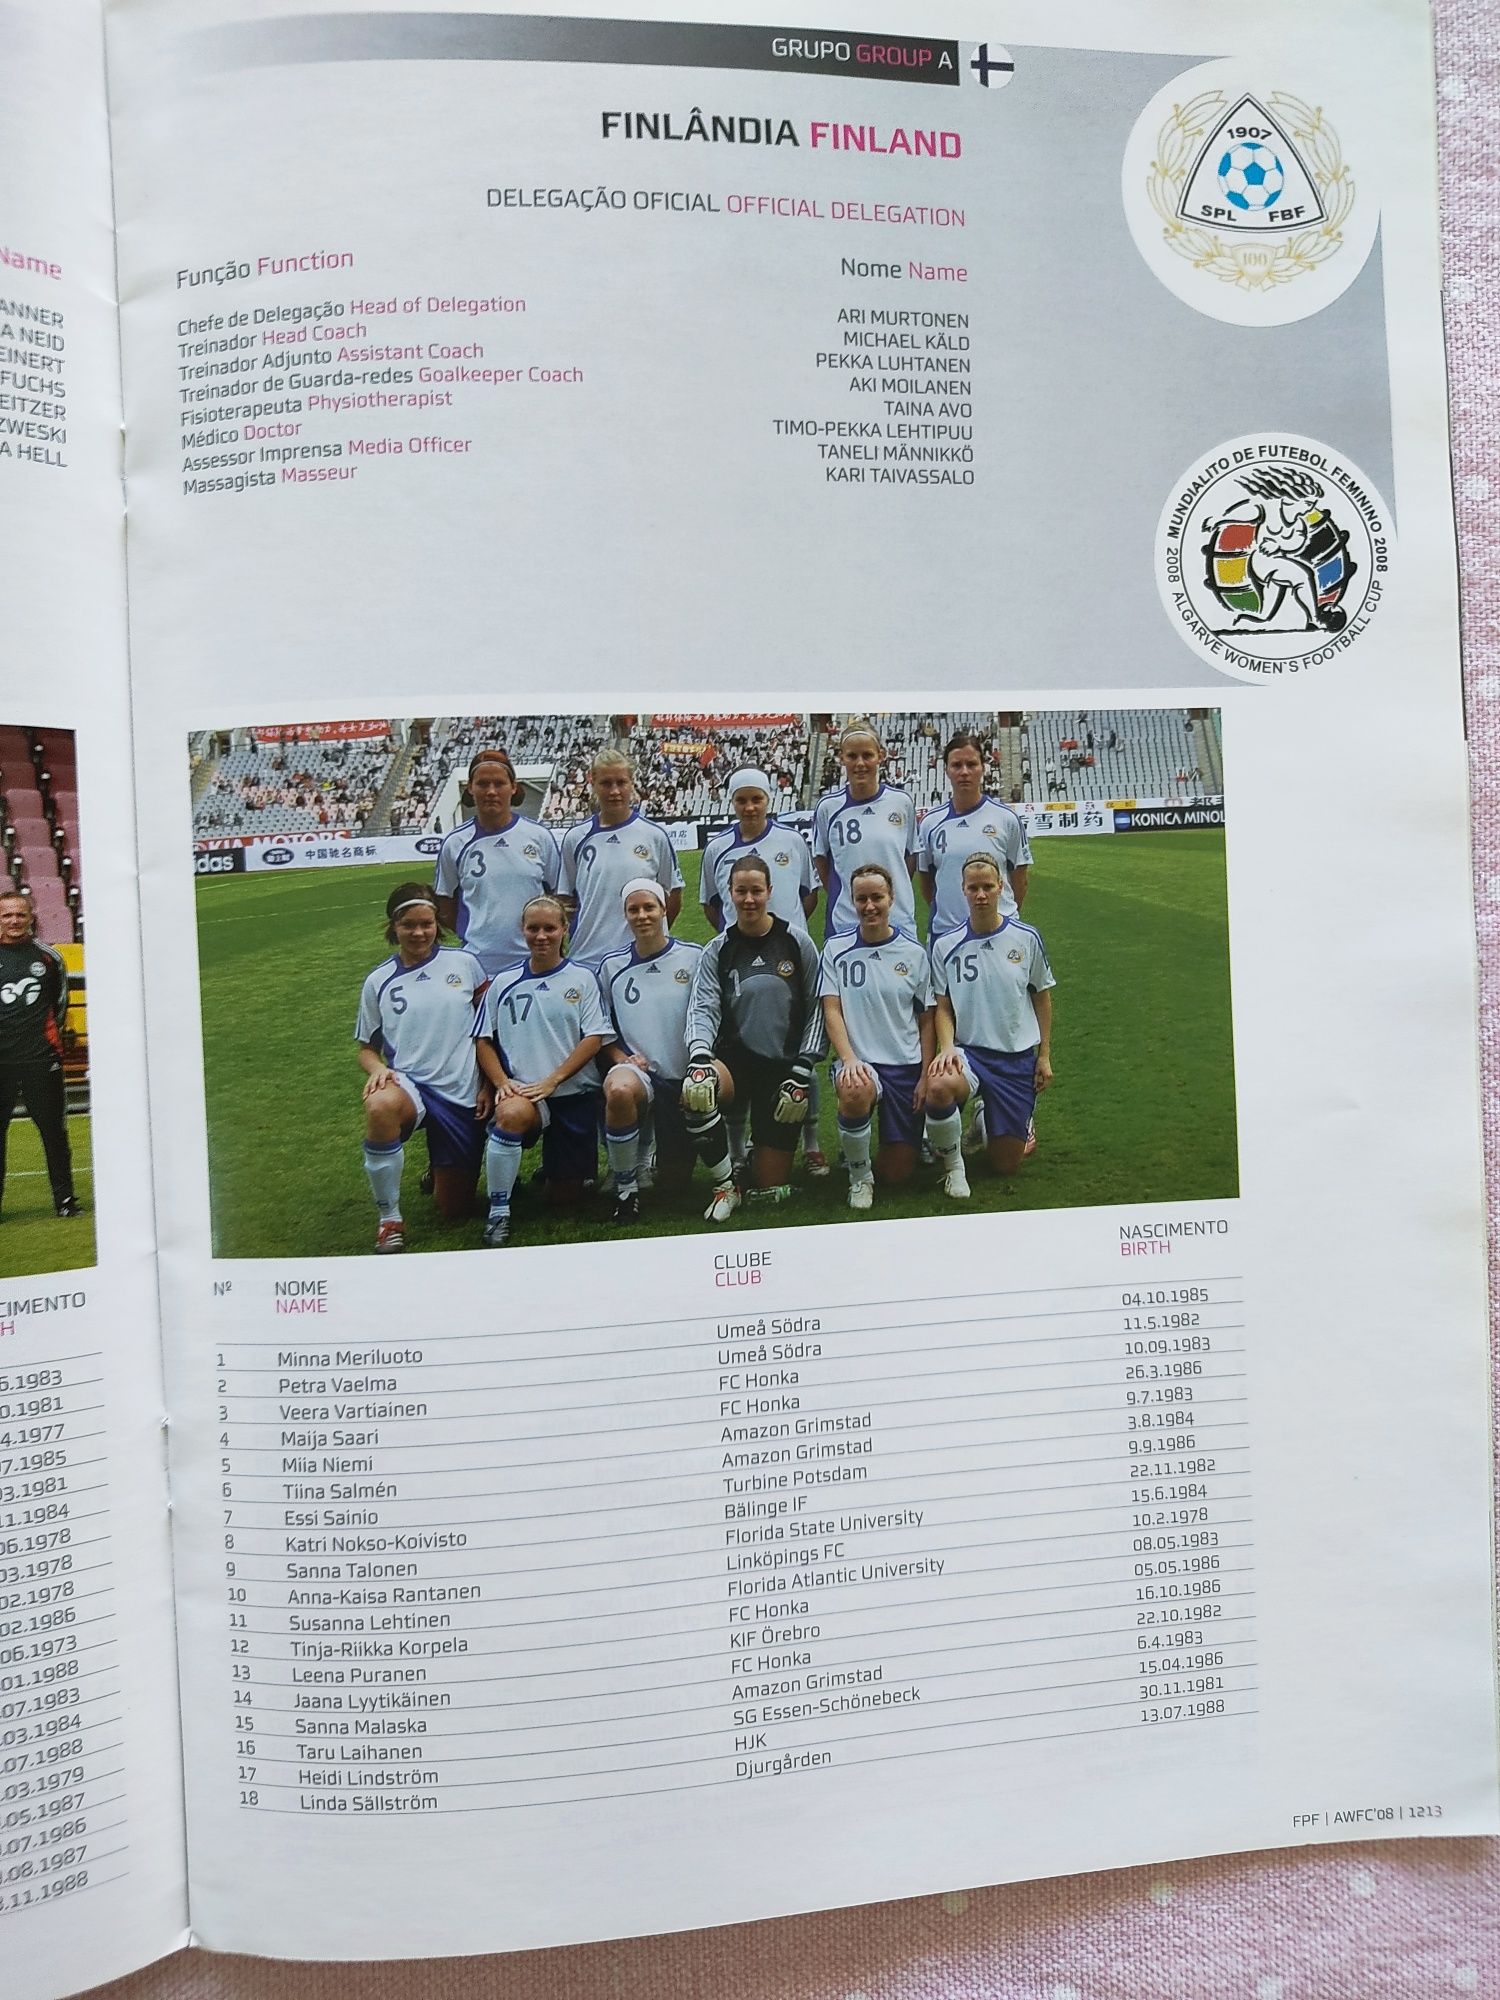 Programa de Mundialito de futebol feminino Algarve 2008